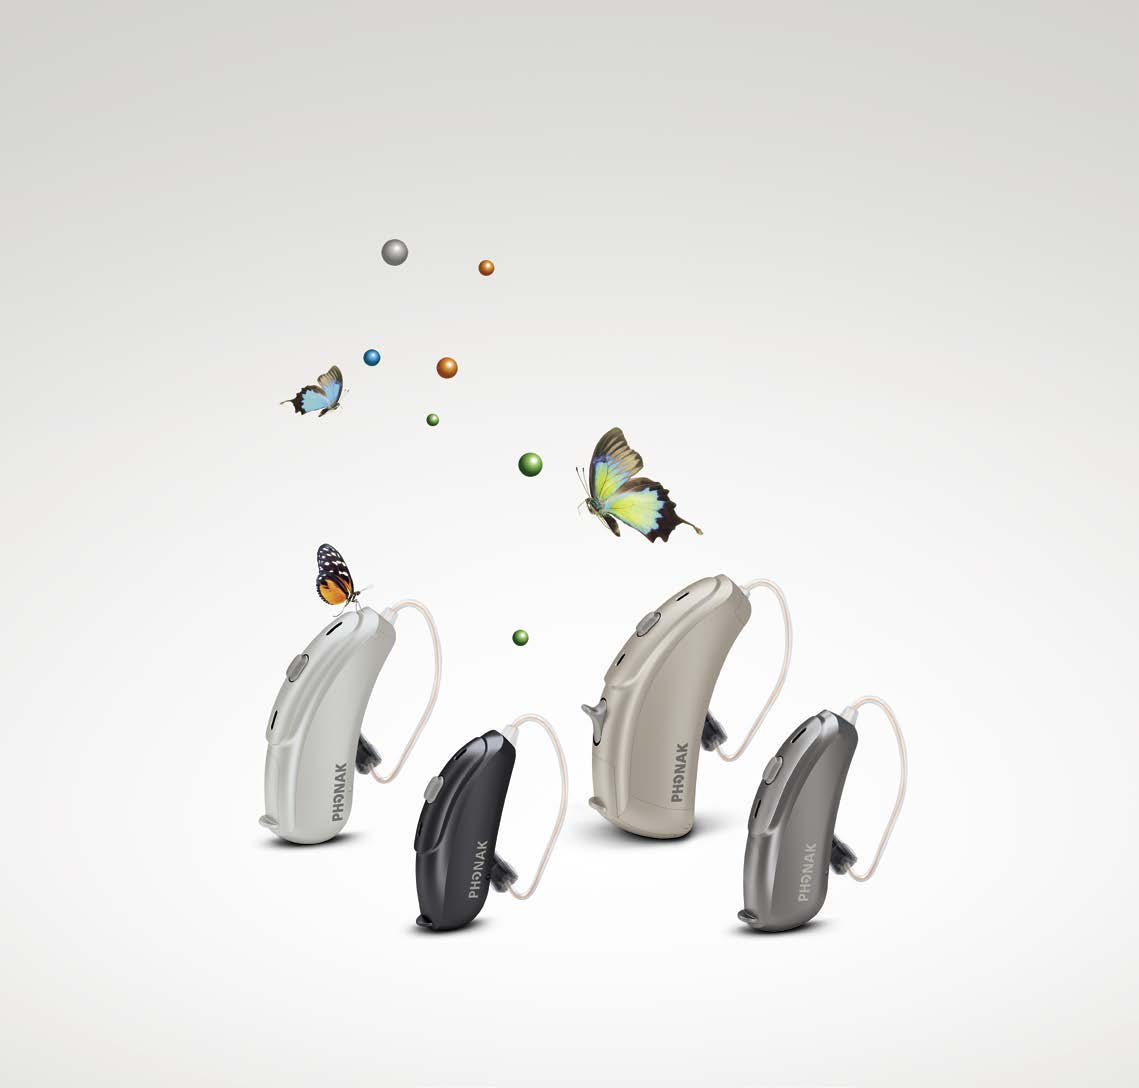 Produktinformation Phonak Audéo V ist die neue RIC-Hörgerätefamilie für leichte bis hochgradige Hörverluste.